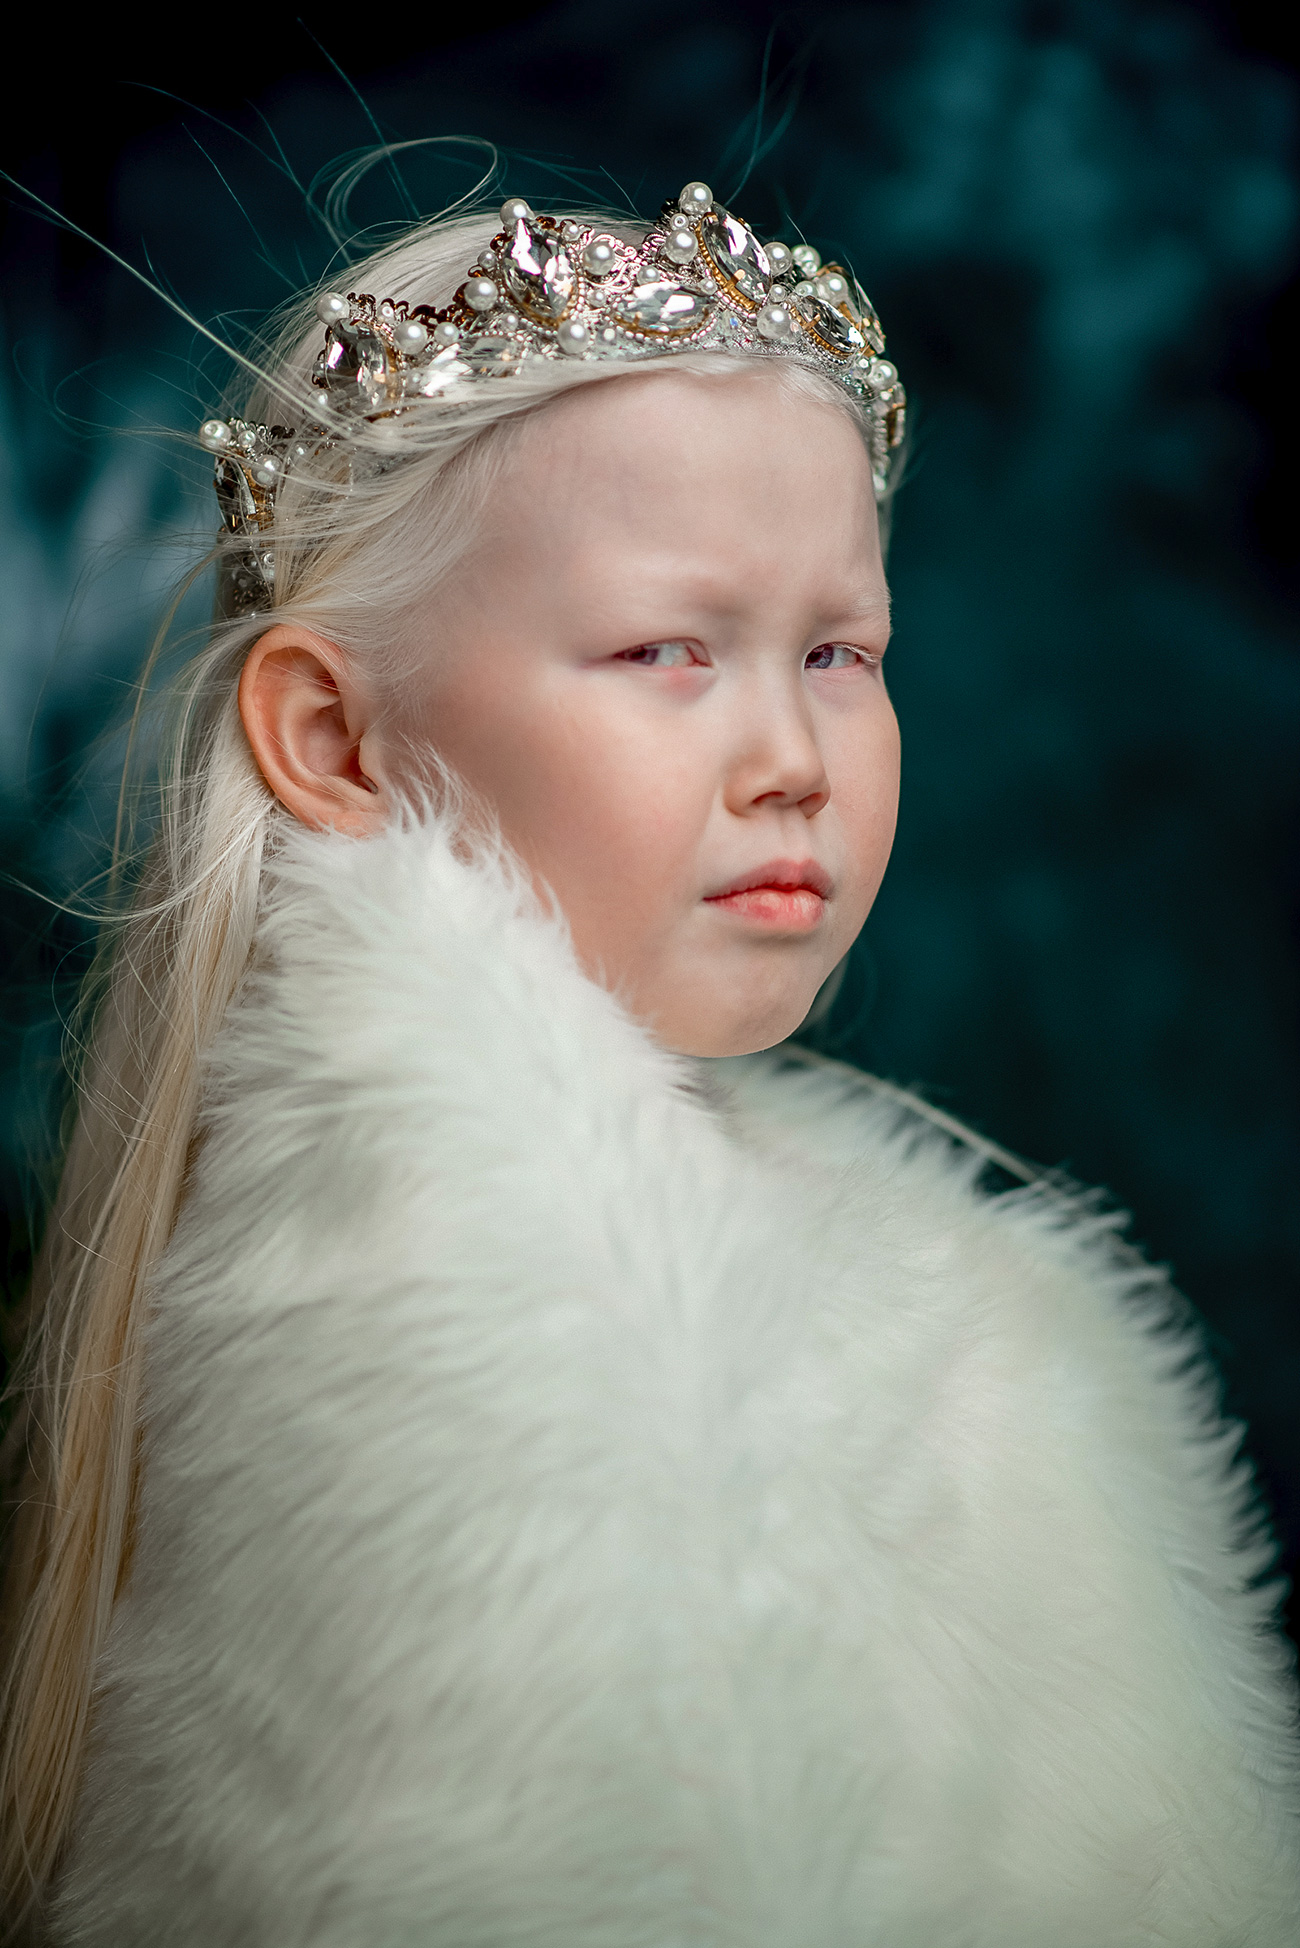 Nariyana je albino djevojčica. Ima snježnobijelu kosu, porculansku kožu i kameleonske plavo-ljubičaste oči. Njezina pojava uopće nije tipična za stanovnike njezine rodne Jakutije, gdje su žene većinom smeđooke brinete.